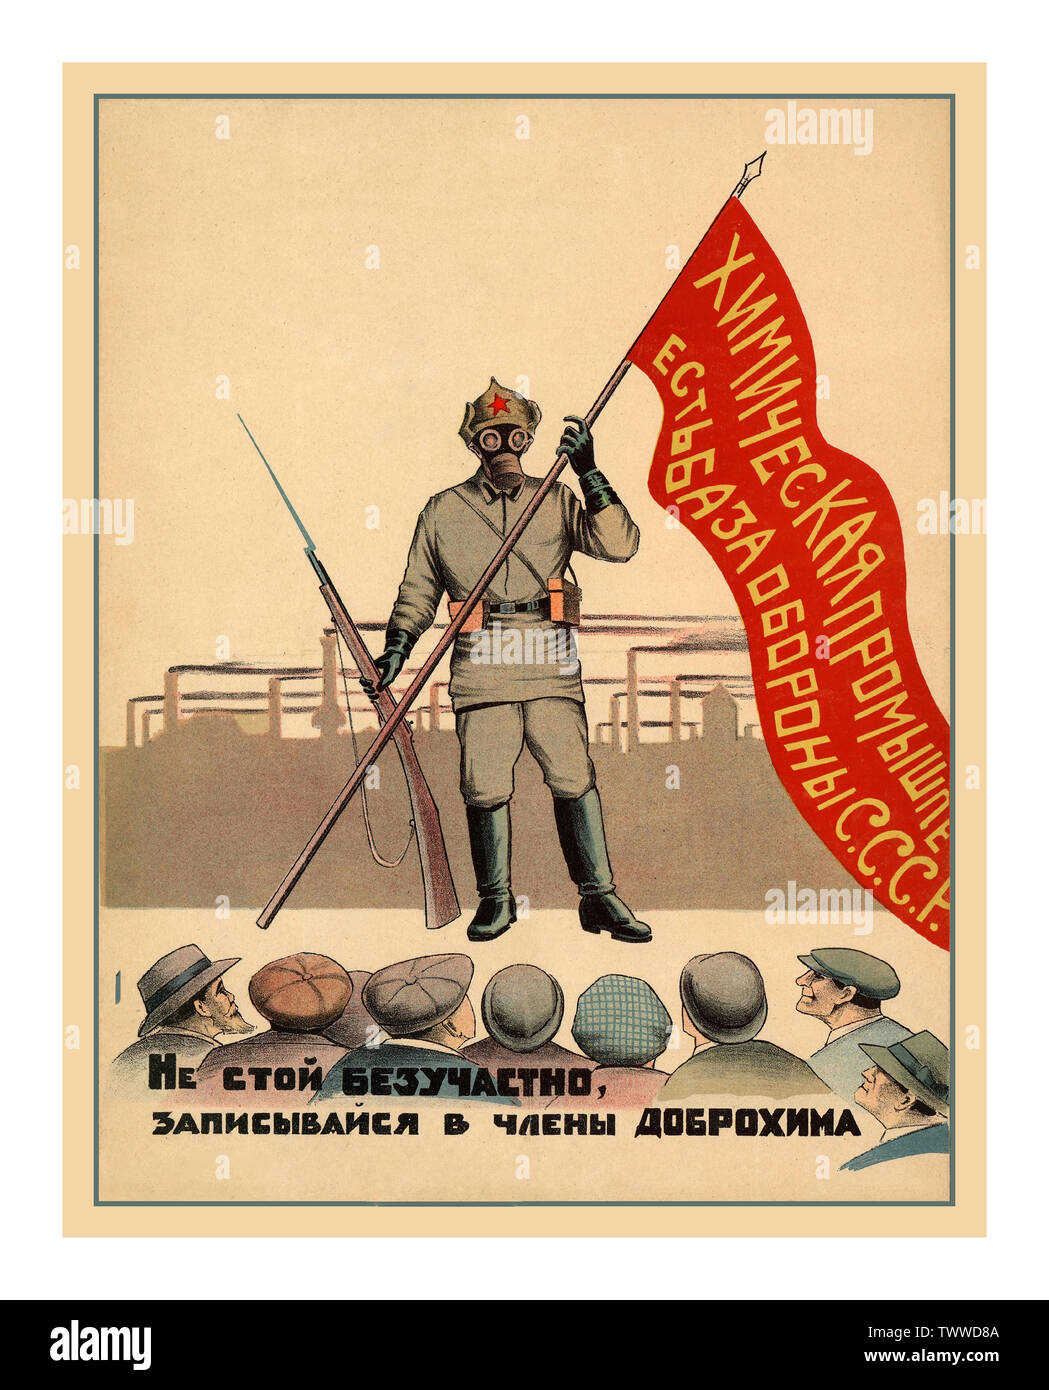 Vintage 1925 affiche de propagande soviétique de Russie pour" l'industrie de guerre chimique est la base de la défense de l'URSS : ne pas rester indifférent, s'enregistrer en tant que membre d'Dobrokhim Typolithography" poster 1925 de l'Académie de Leningrad - Lithographie couleur Banque D'Images